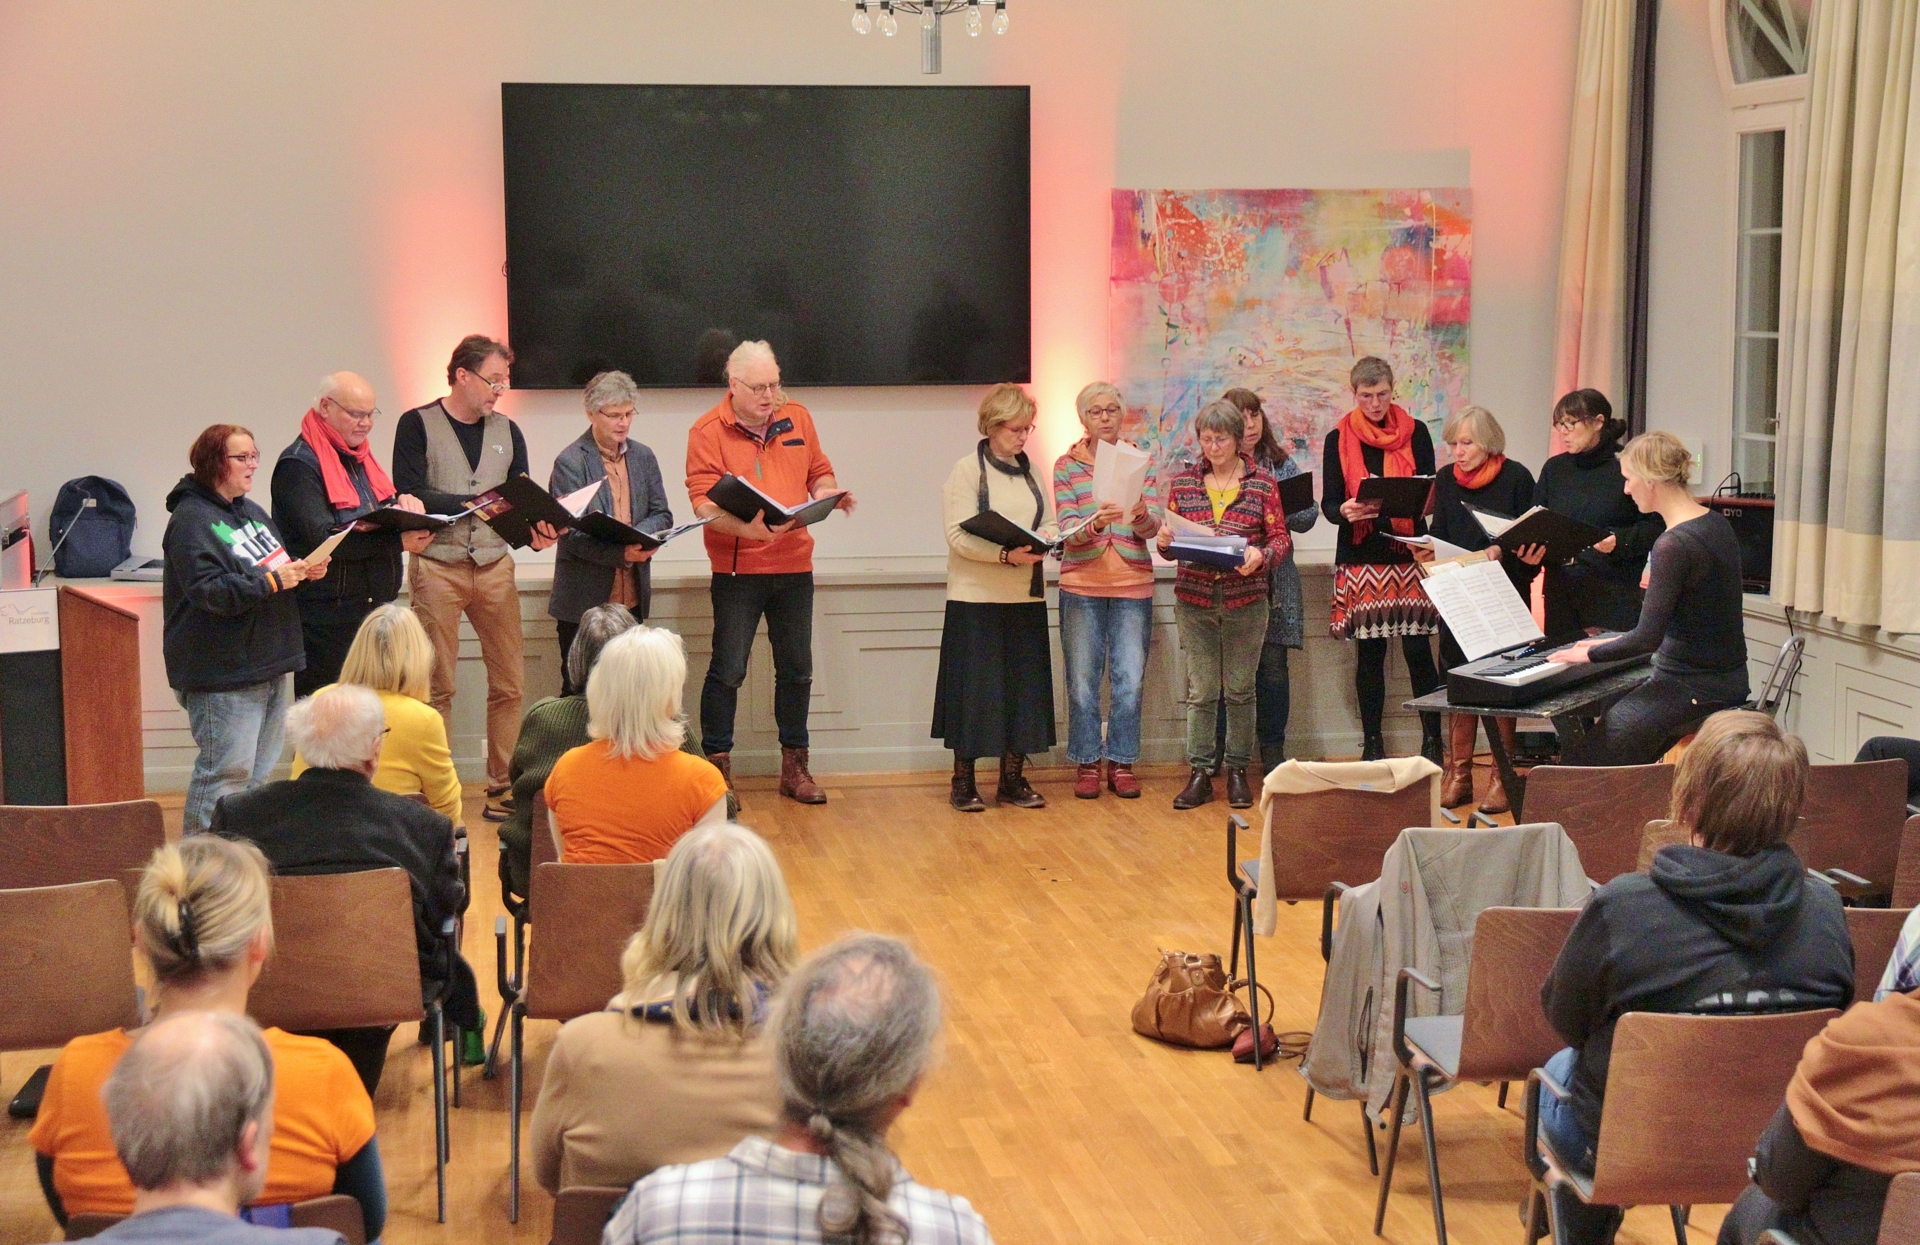 'POLITICALied' gestaltete zusammen mit dem Lübecker Gewerkschaftschor 'Brot & Rosen' auch ein musikalisches Rahmenprogramm zum 'Internationalen Tag der Menschenrechte' © Thomas Biller